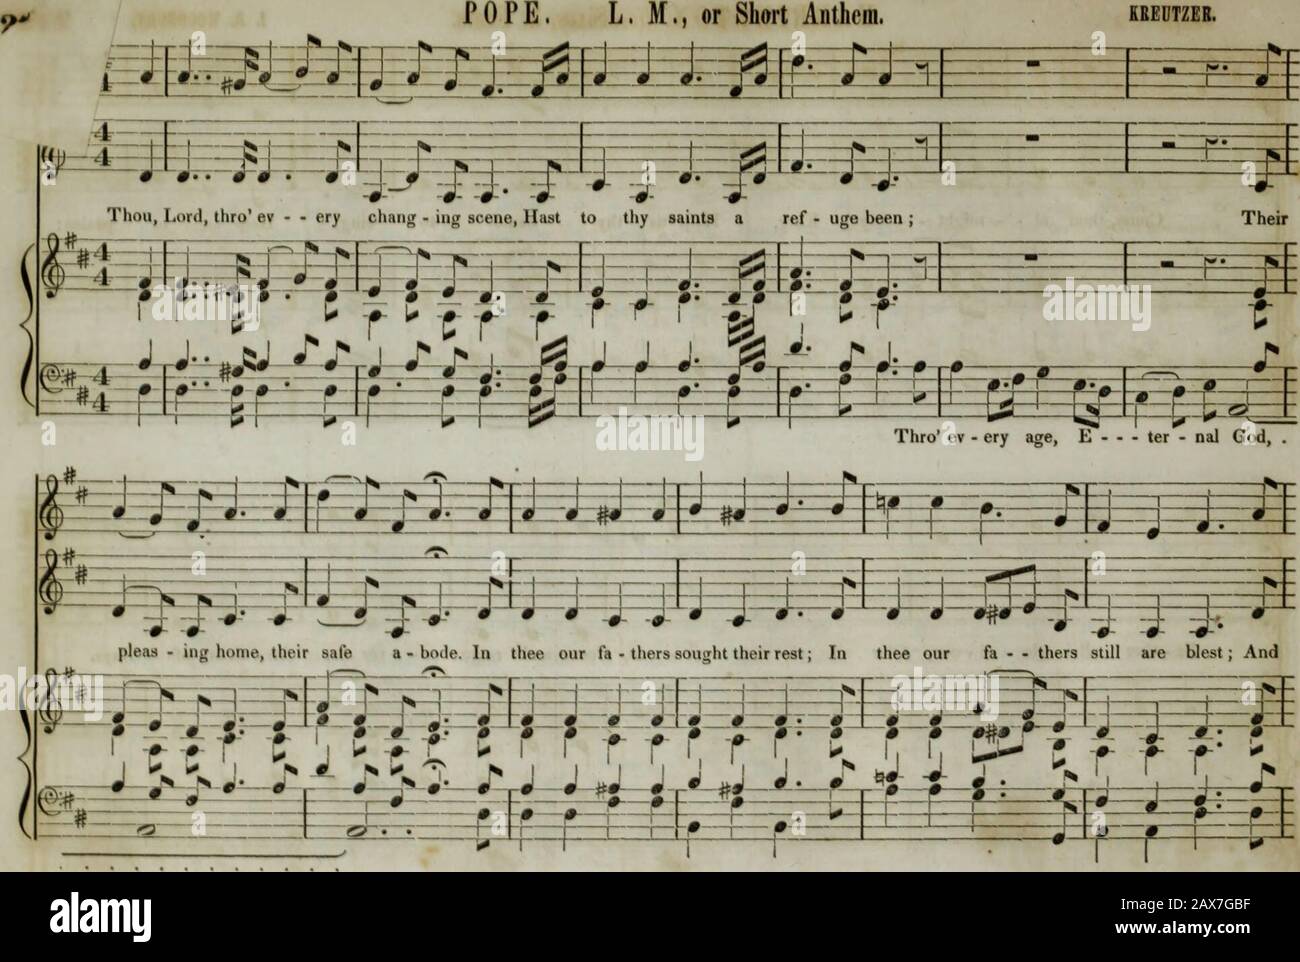 Die Sammlung der Kirchenmusik der Boston Musical Education Society besteht aus originalen Psalm- und Hymnenstücken, ausgewählten Stücken, Gesängen, &c.; einschließlich Kompositionen, die an den Dienst der evangelischen Episkopalkirchengemeinde angepasst sind. 63 • HARRINGTON, Sixes & Fours. I B. Woodbury. 22S&gt; h-i-r-f-?- 9 ^ # * ¥-- 1! 1 1 f L    1. ! 1-1 Lj 1 1- - F 1 U 4 1 1 9- r ? J? * J-J- Komm, du al - vielleicht - - - - -; r König, hilf uns, deinen Namen zu Esfieeje zu singen, hilf uns zu 1 11 Lob; j- j. -i &-8 f-1"-^-i Arm 2 ^ J- -& 0- j- j 9 i --1- ^E fc=f=H y-^ r-f j1 ^ 1 ? 1 1i 1 Fa • there all glo - RI - OU, -i-H- Oe Stockfoto